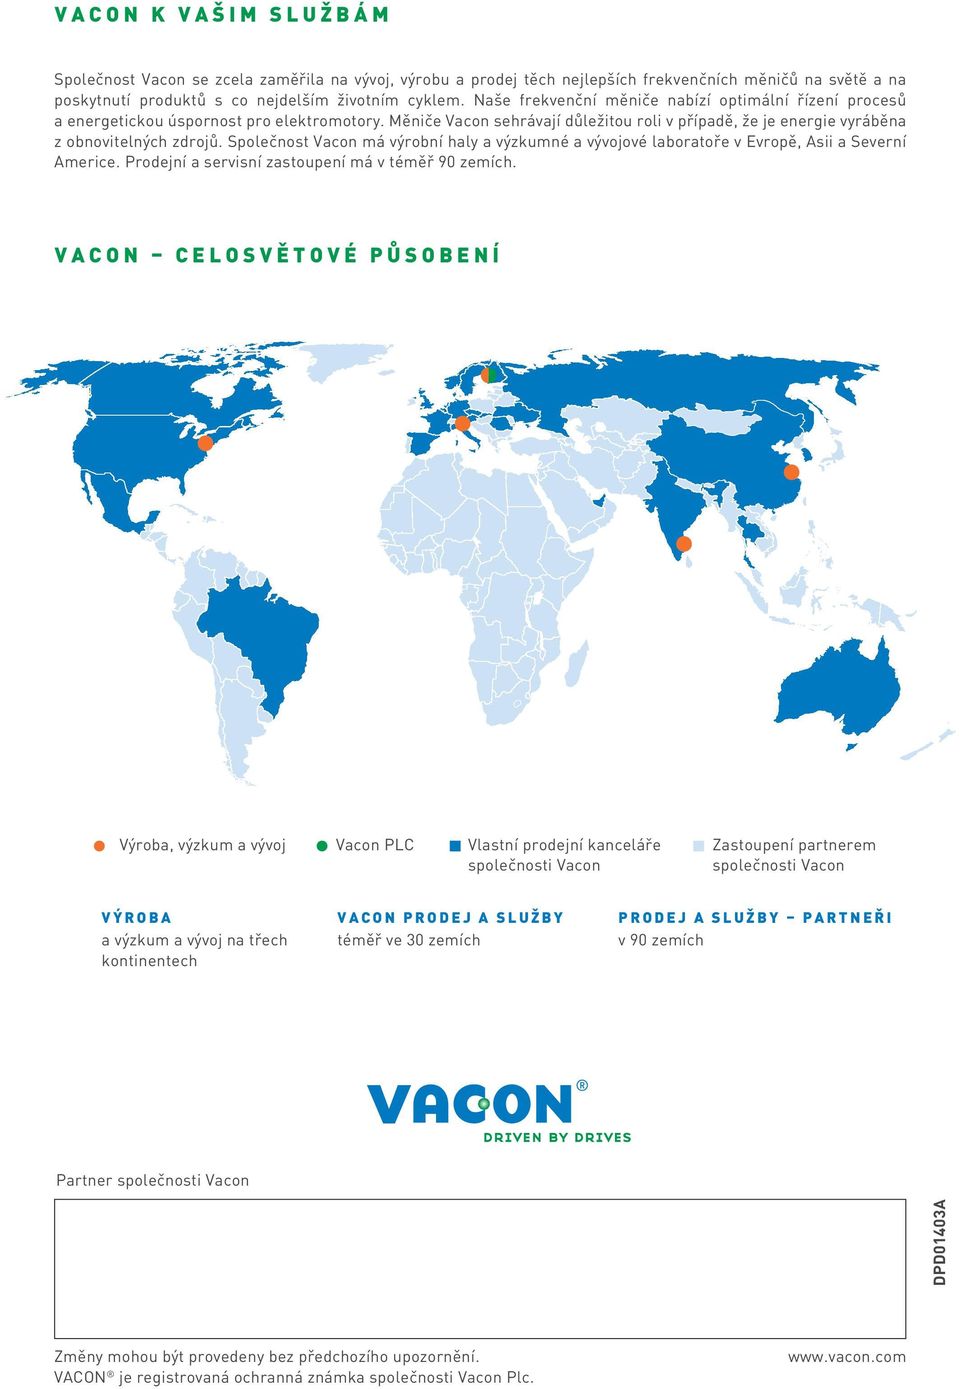 Společnost Vacon má výrobní haly a výzkumné a vývojové laboratoře v Evropě, Asii a Severní Americe. Prodejní a servisní zastoupení má v téměř 90 zemích.